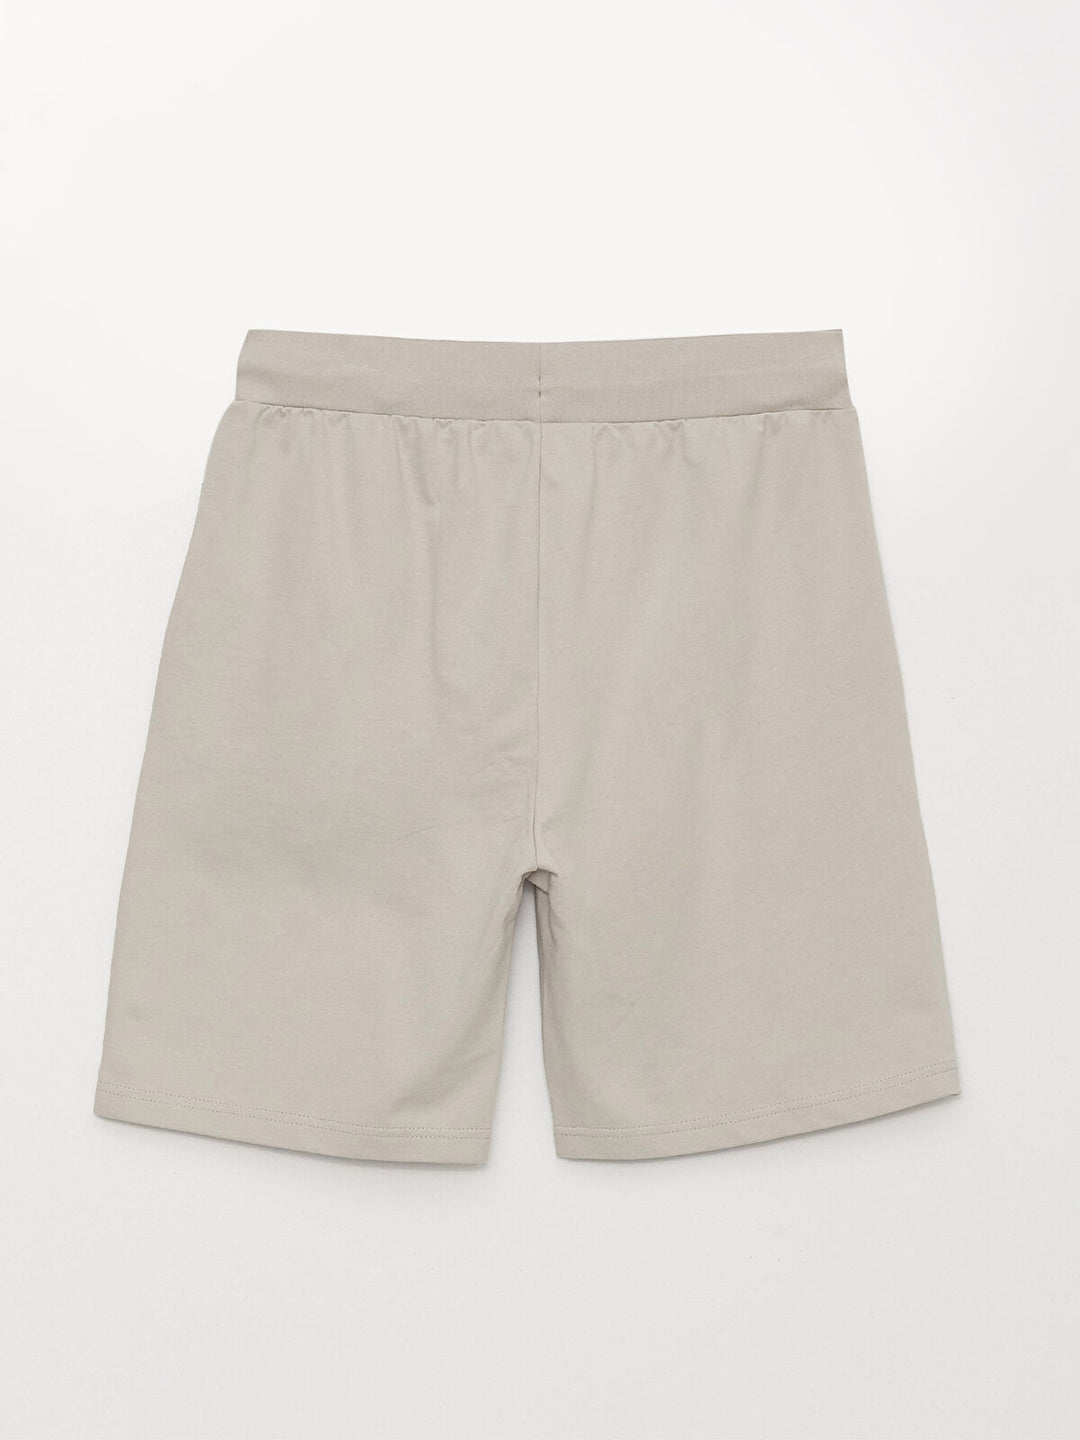 Standard Pattern Printed Men Shorts